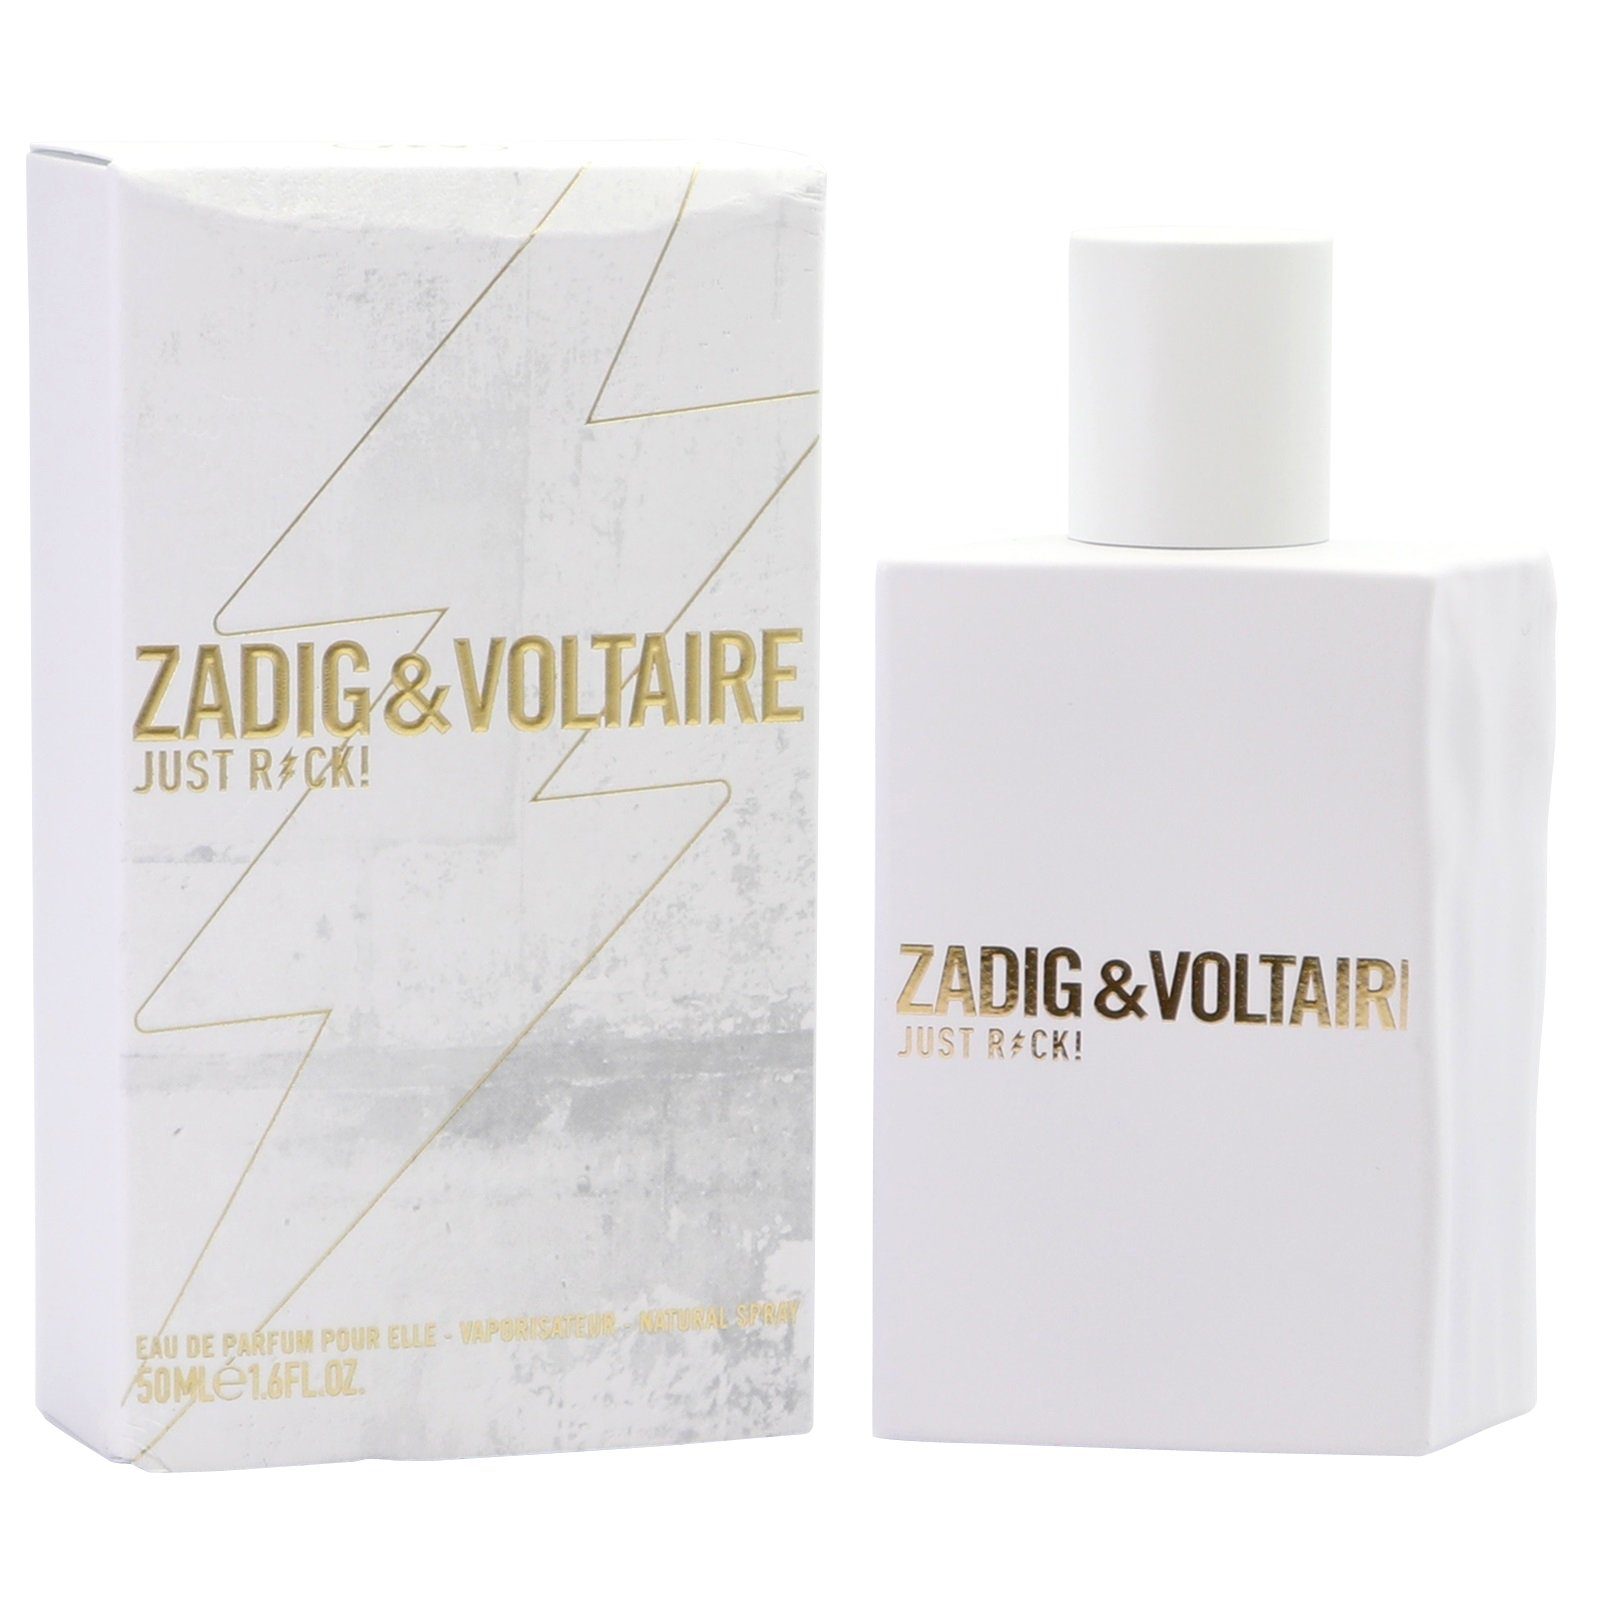 de de VOLTAIRE Elle Parfum ZADIG Voltaire Rock! for Zadig Pour 50ml Just & Eau Spray Parfum Eau her &